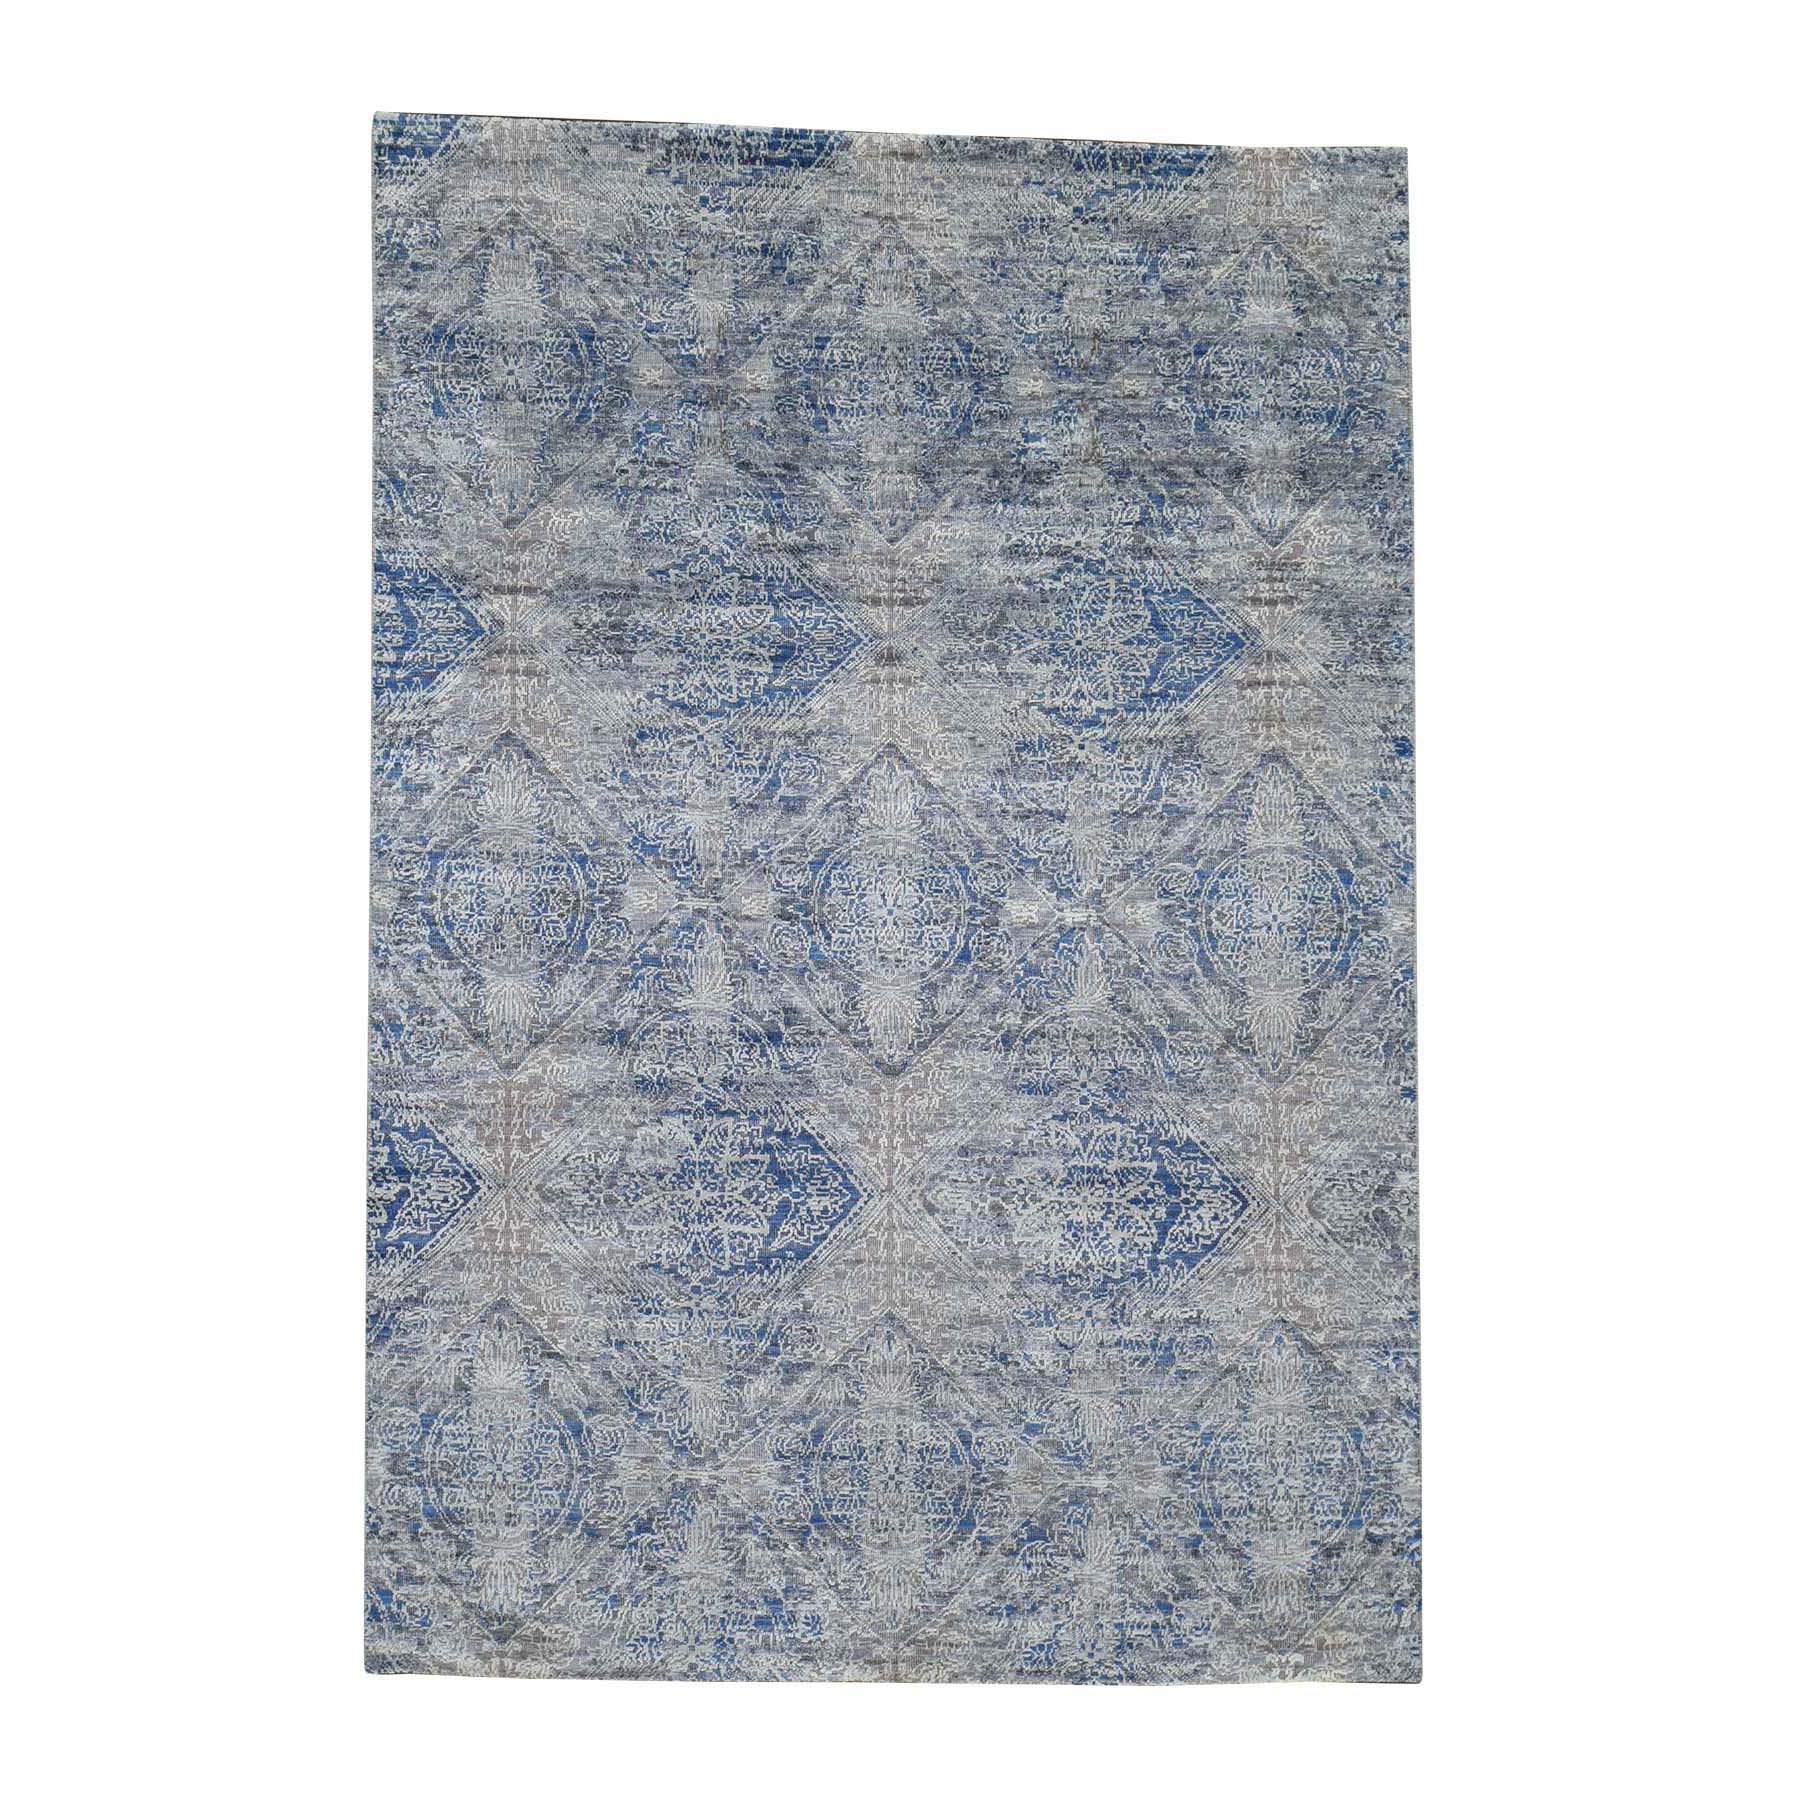 4'9"x7' ERASED ROSSETS,Silk With Textured Wool Denim BluE Hand Woven Oriental Rug 